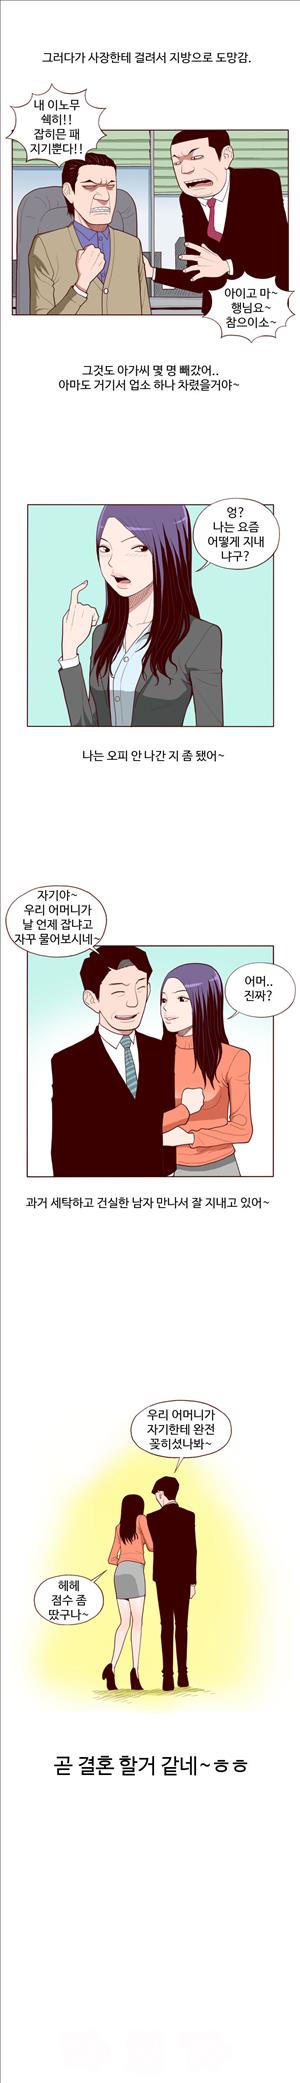 미색 - 썰만화 시즌4 52화 - 오피녀의 비밀(하)_6